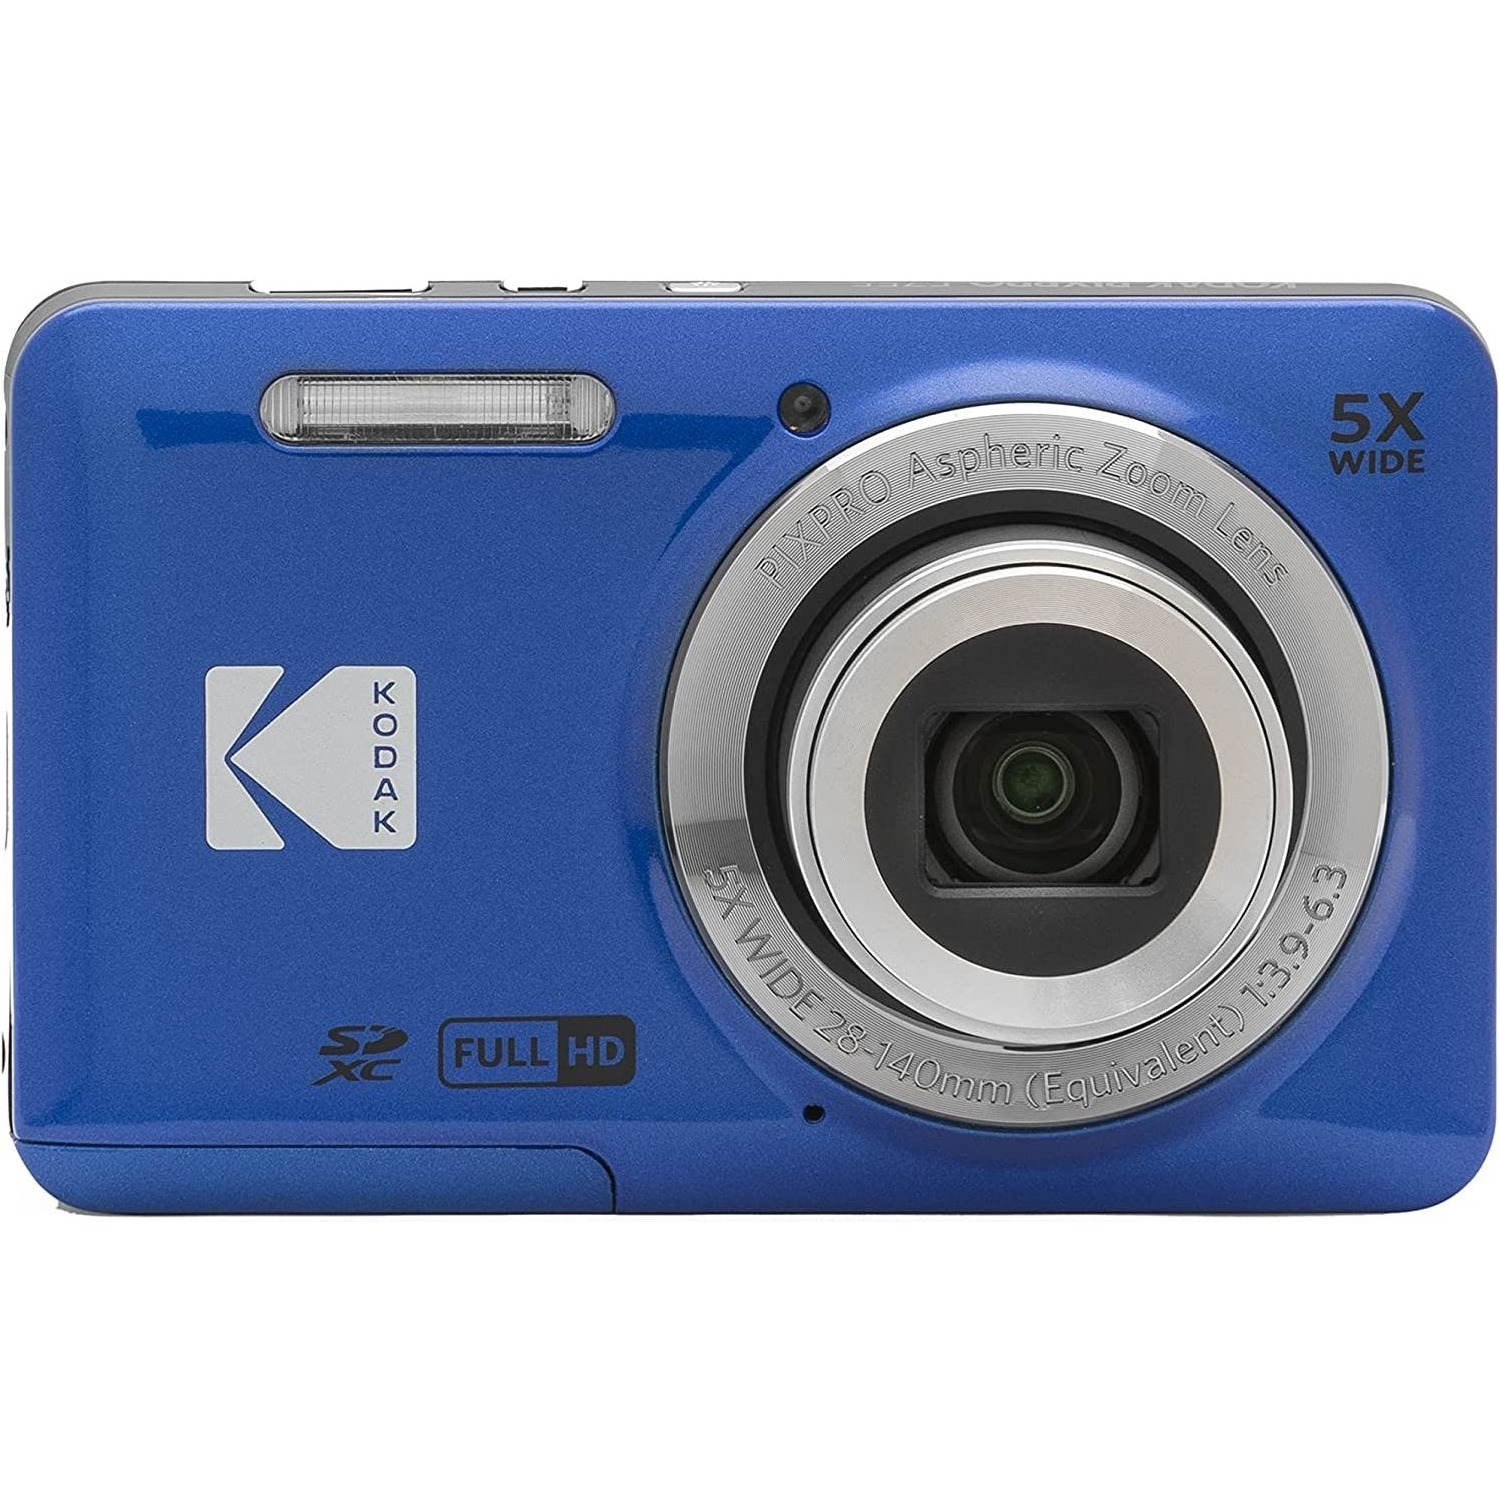 Immagine per Fotocamera digitale Kodak KF55BL colore blu da DIMOStore